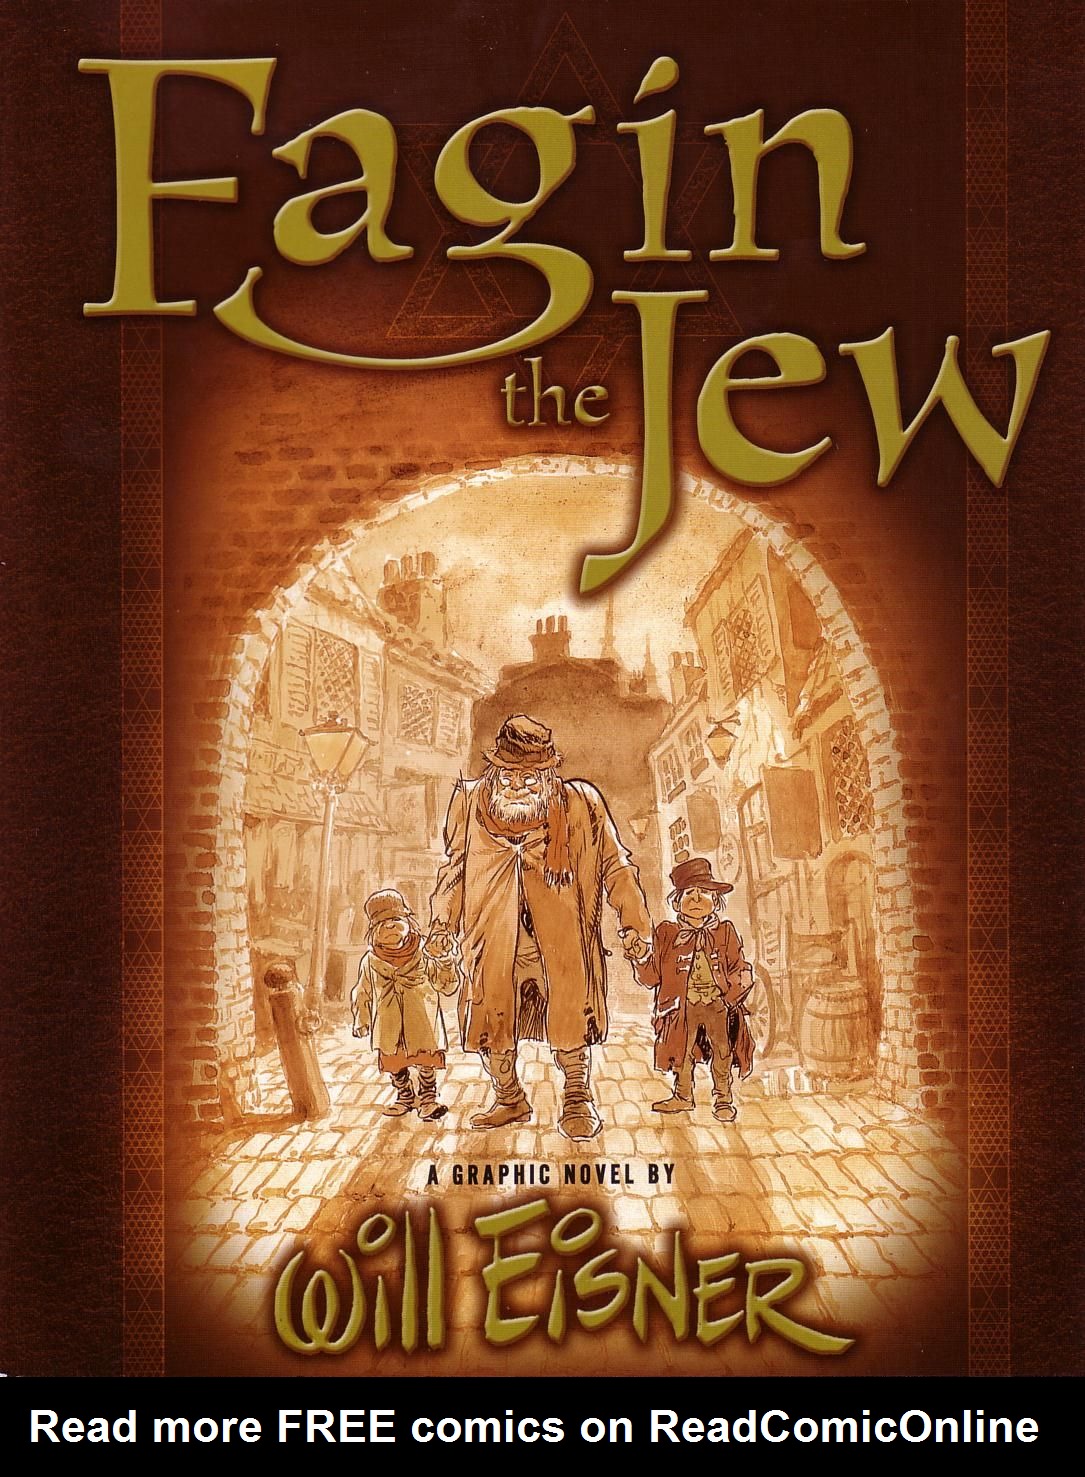 Read online Fagin the Jew comic -  Issue # TPB - 1